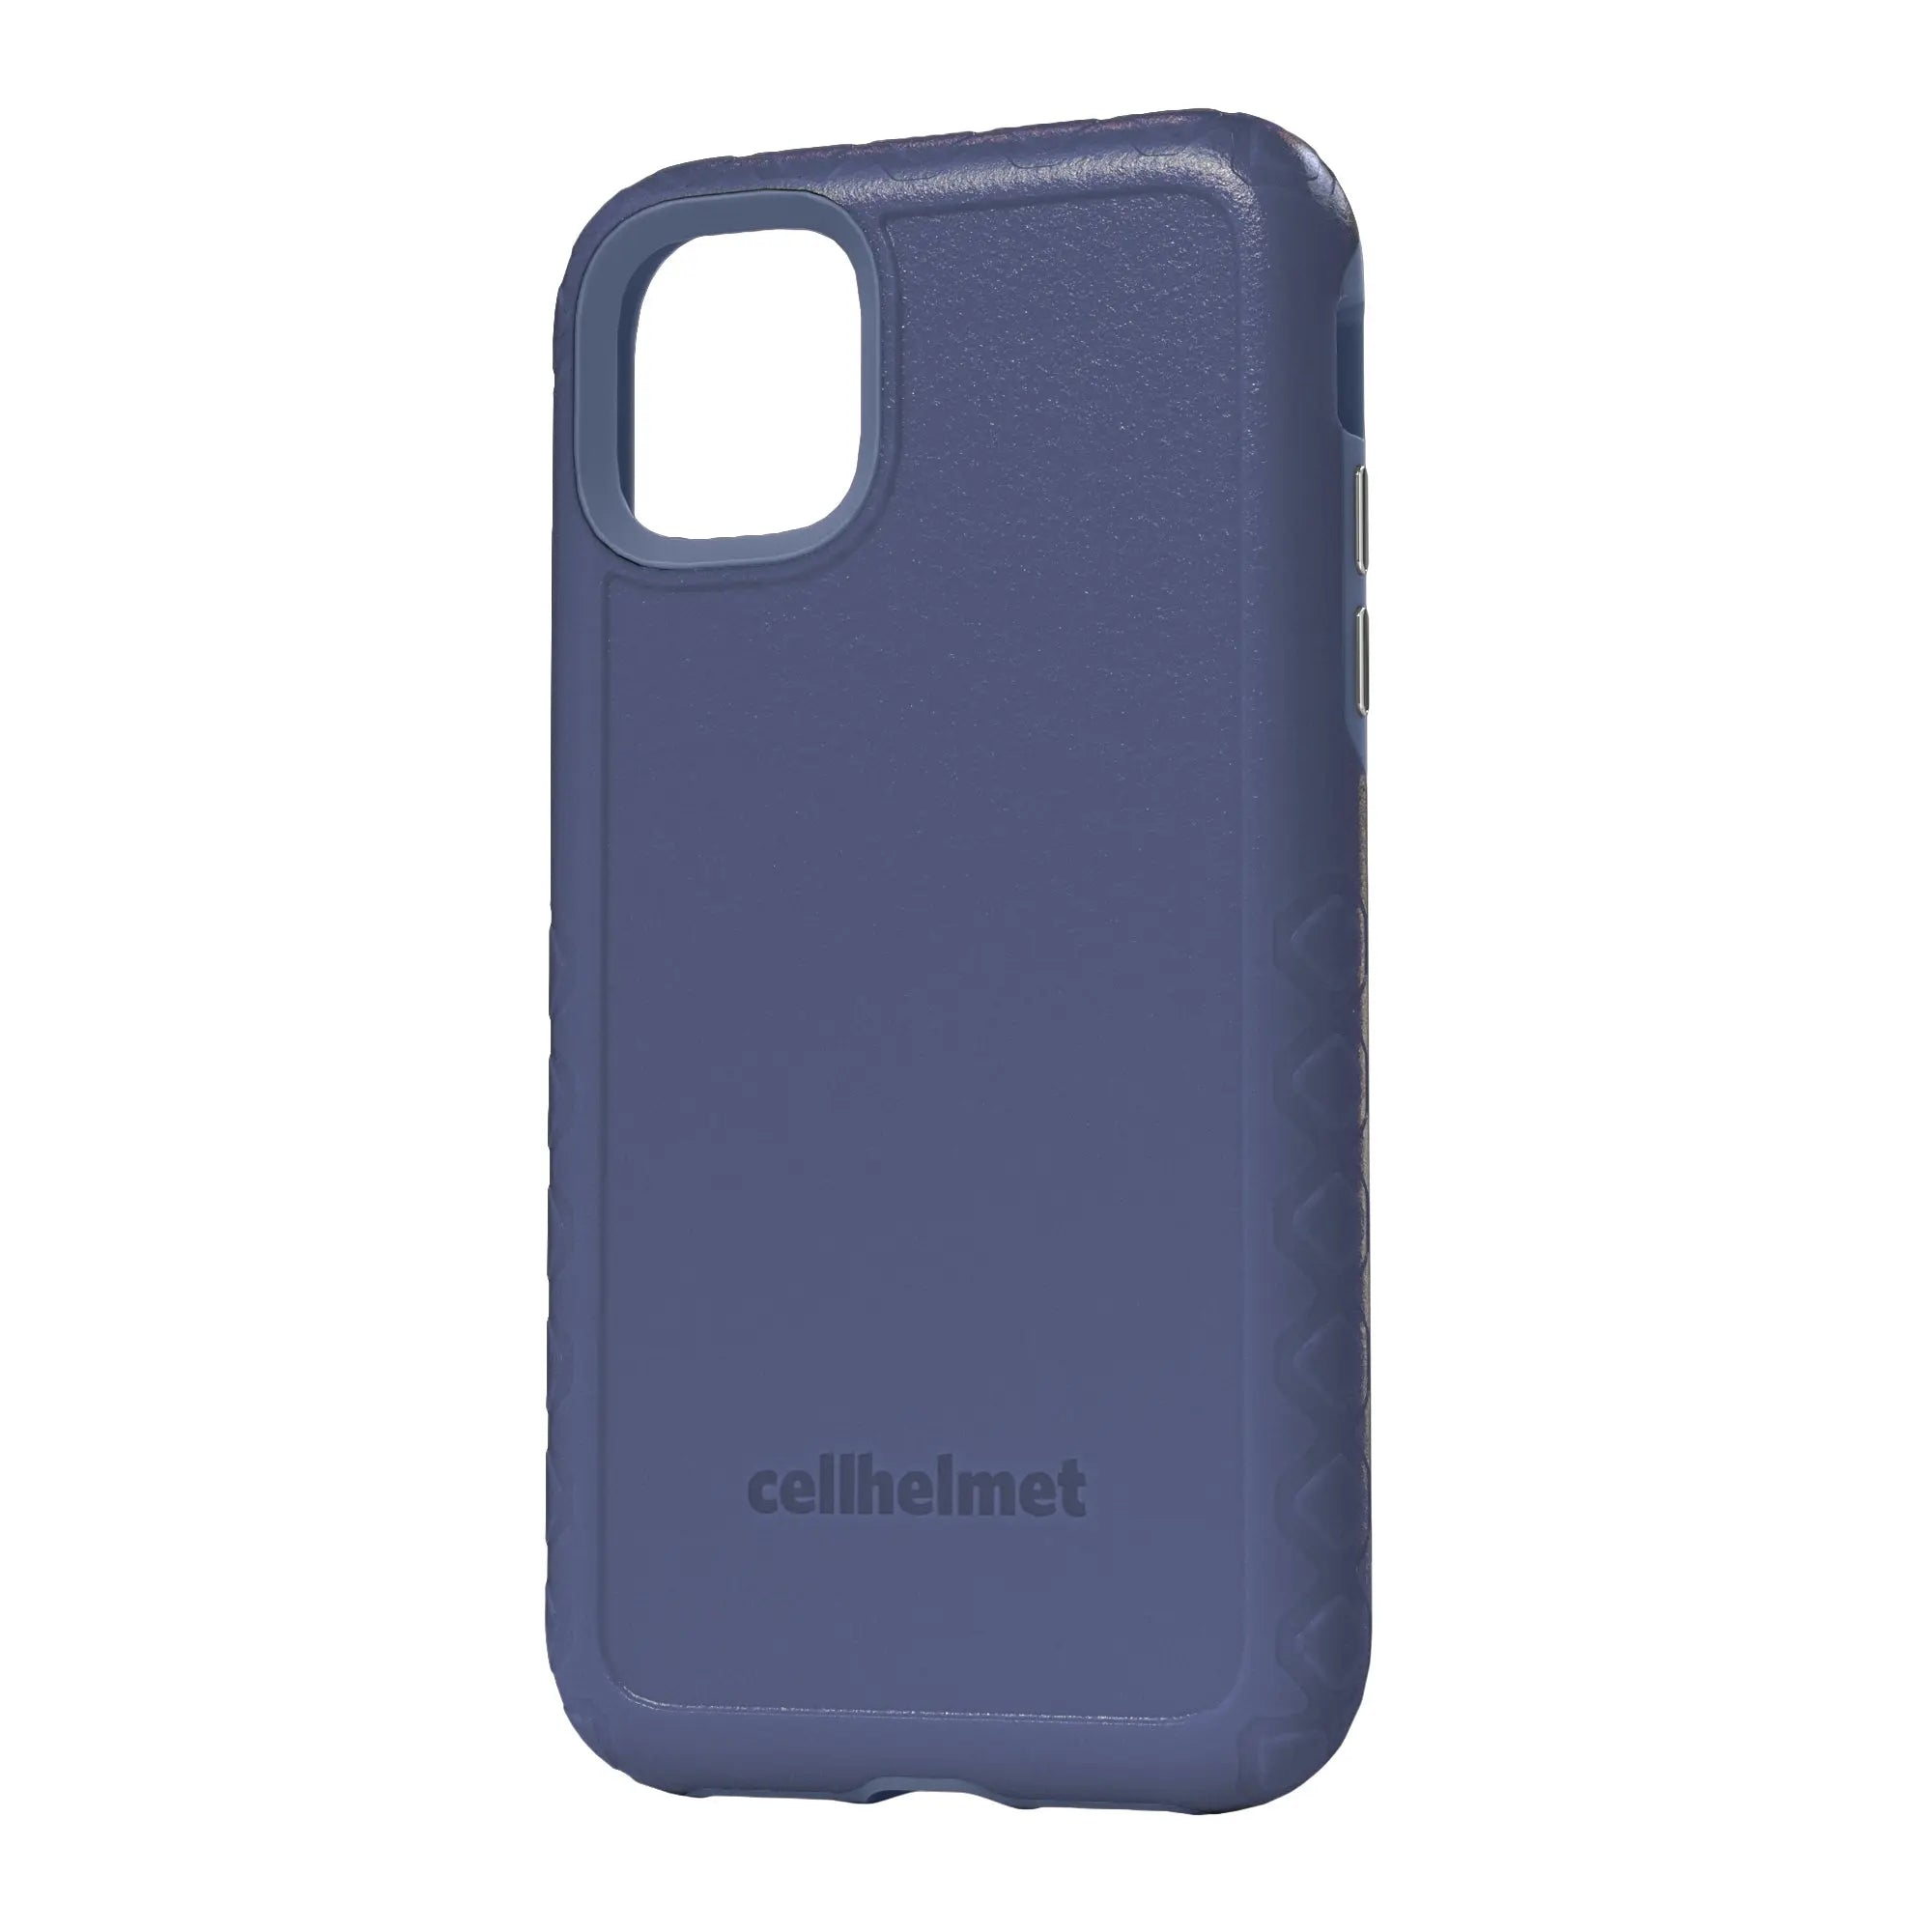 cellhelmet Blue Custom Case for iPhone 11